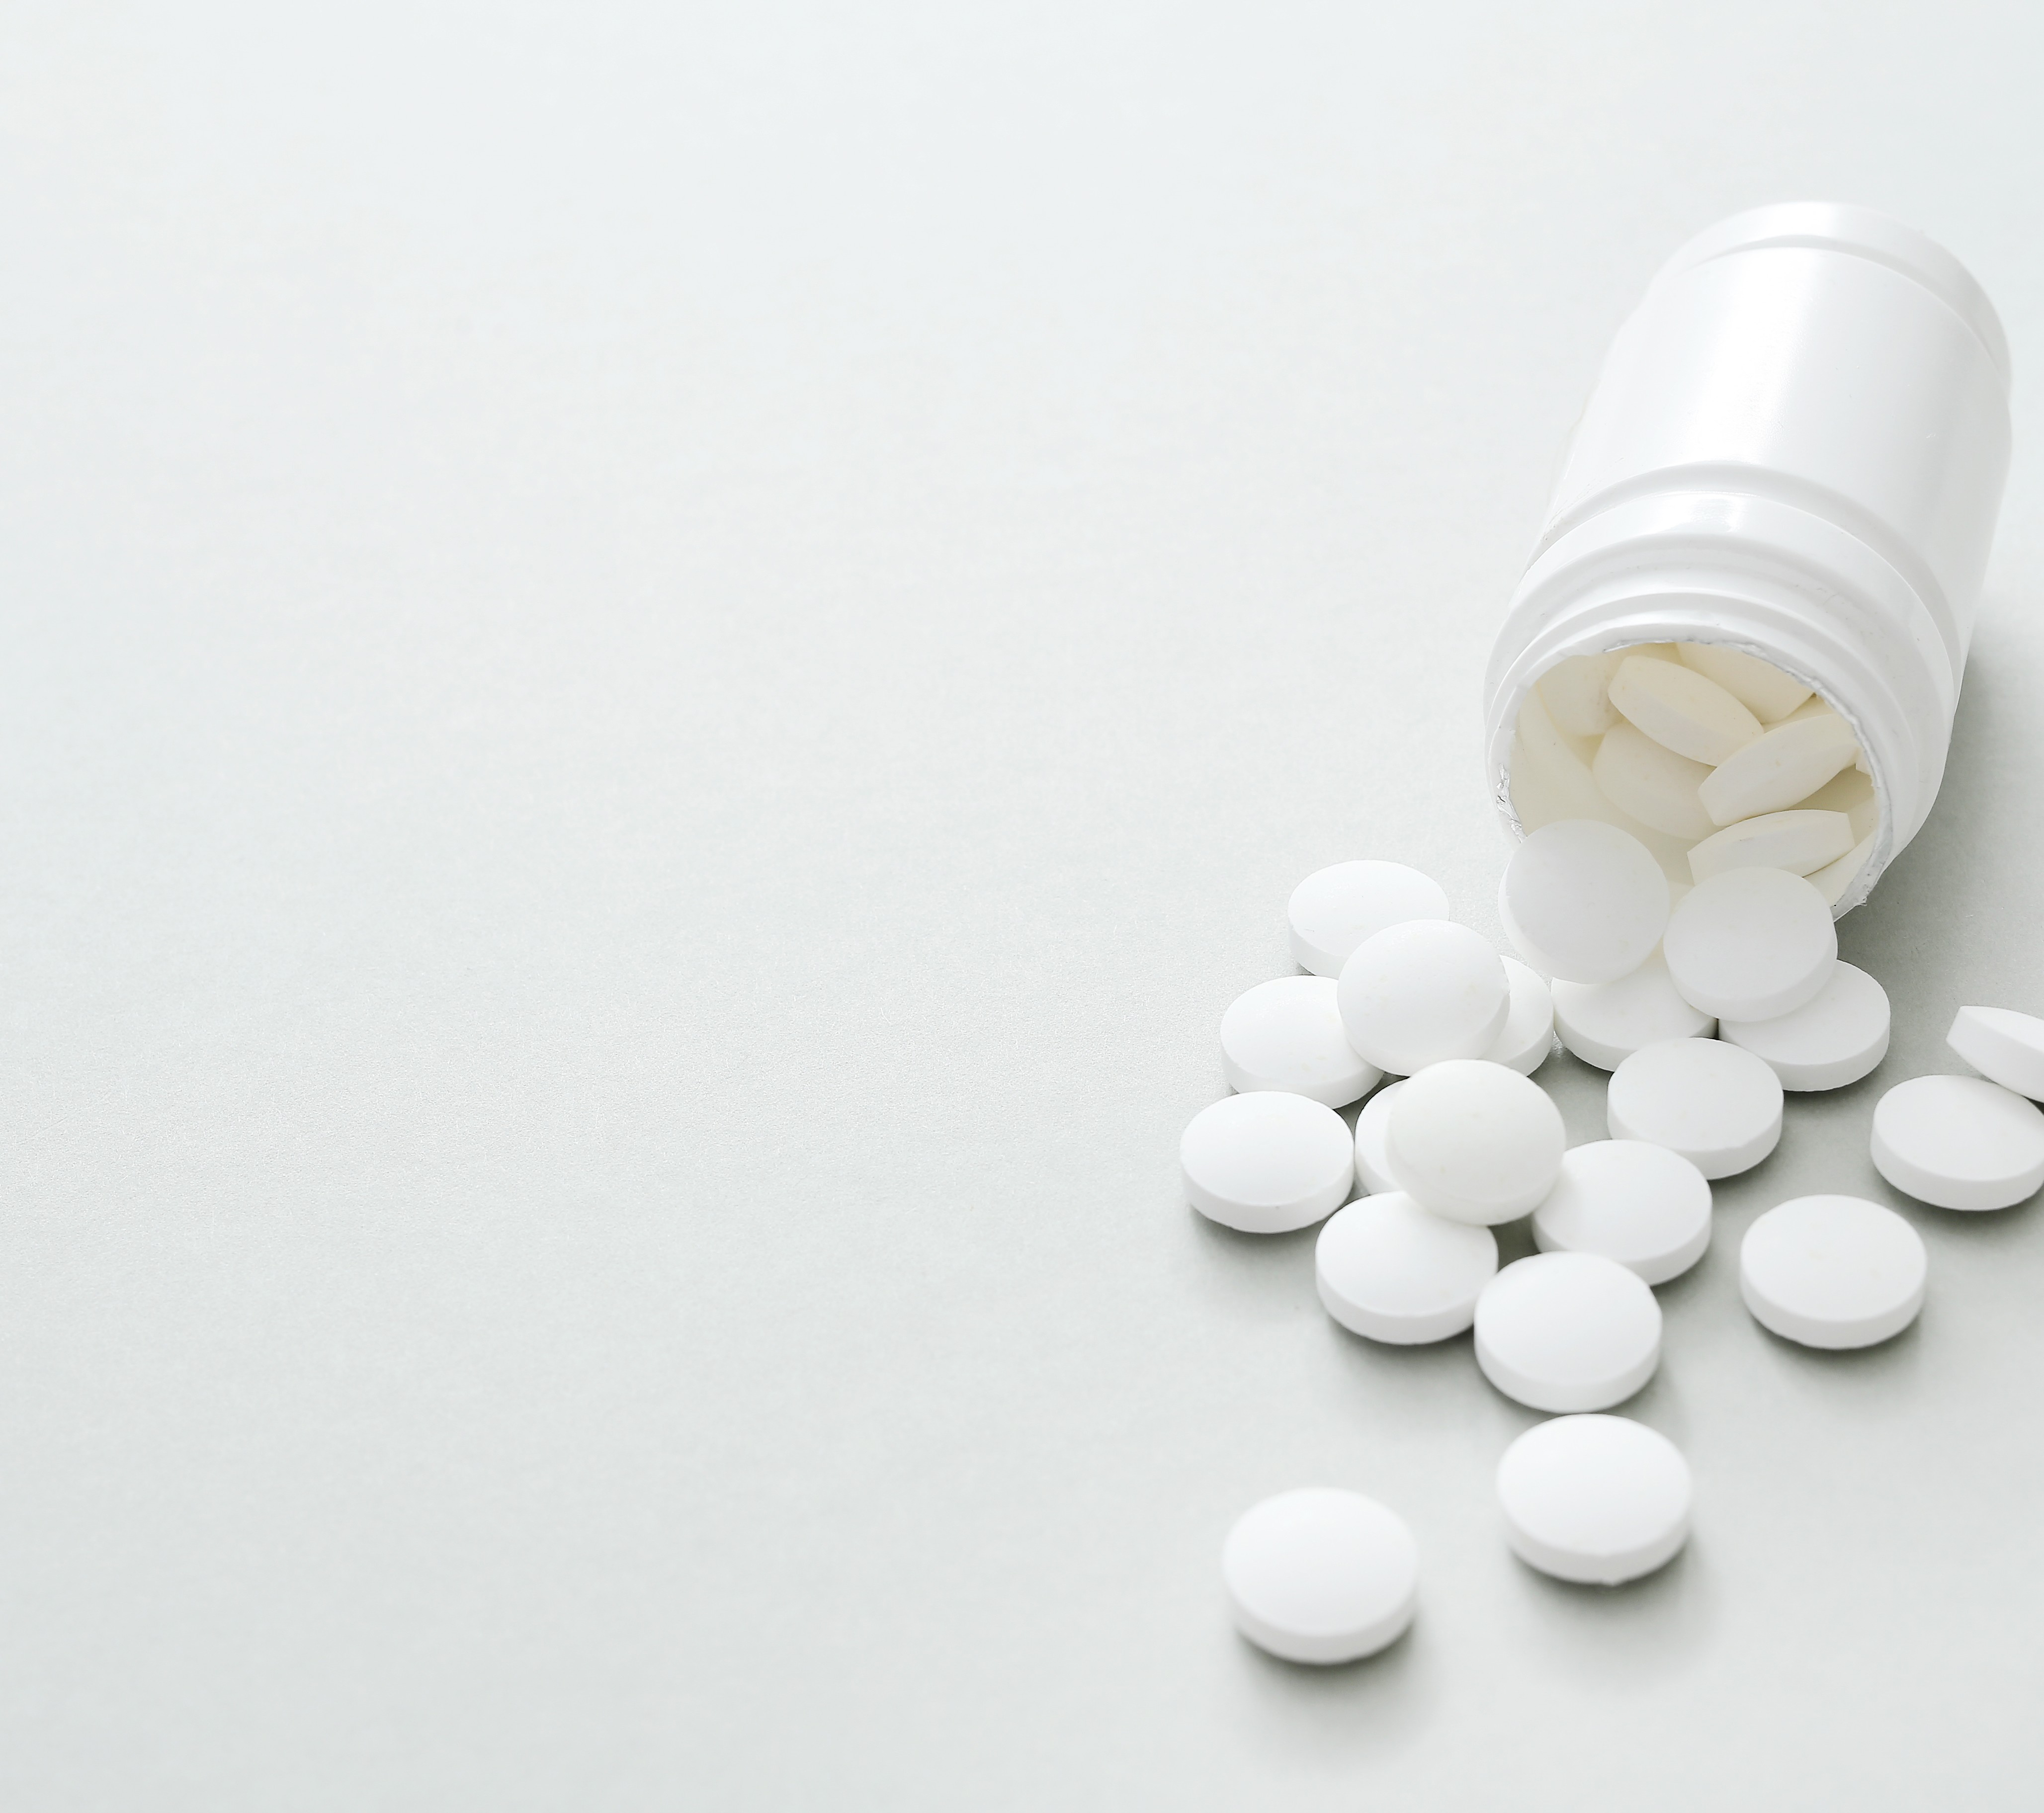 Entenda os riscos do fentanil arco-íris, droga em forma de pílulas  coloridas